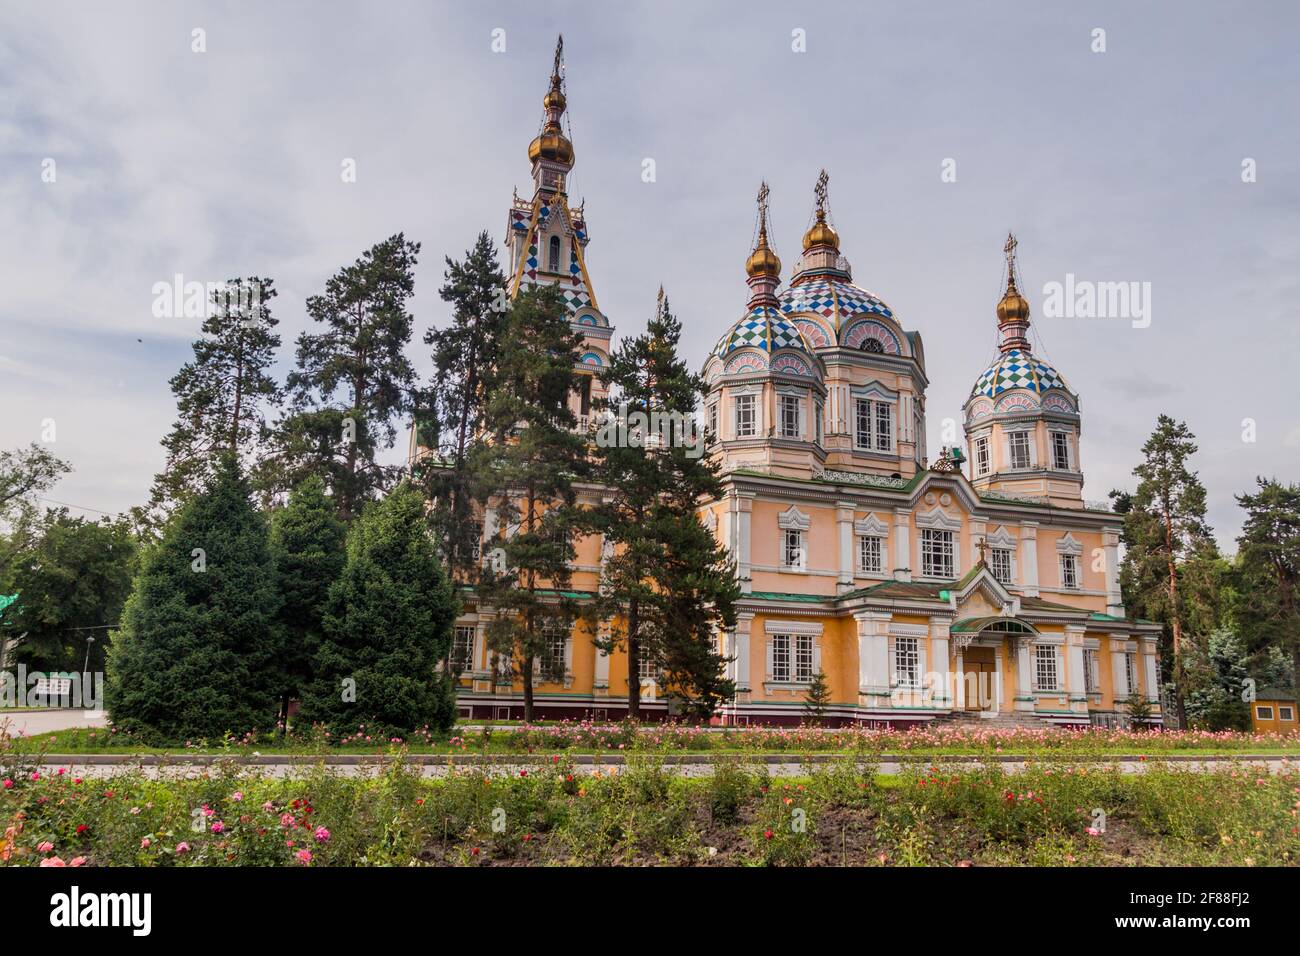 Cattedrale dell'Ascensione Cattedrale di Zenkov , cattedrale ortodossa russa situata nel Parco Panfilov ad Almaty, Kazakhstan Foto Stock